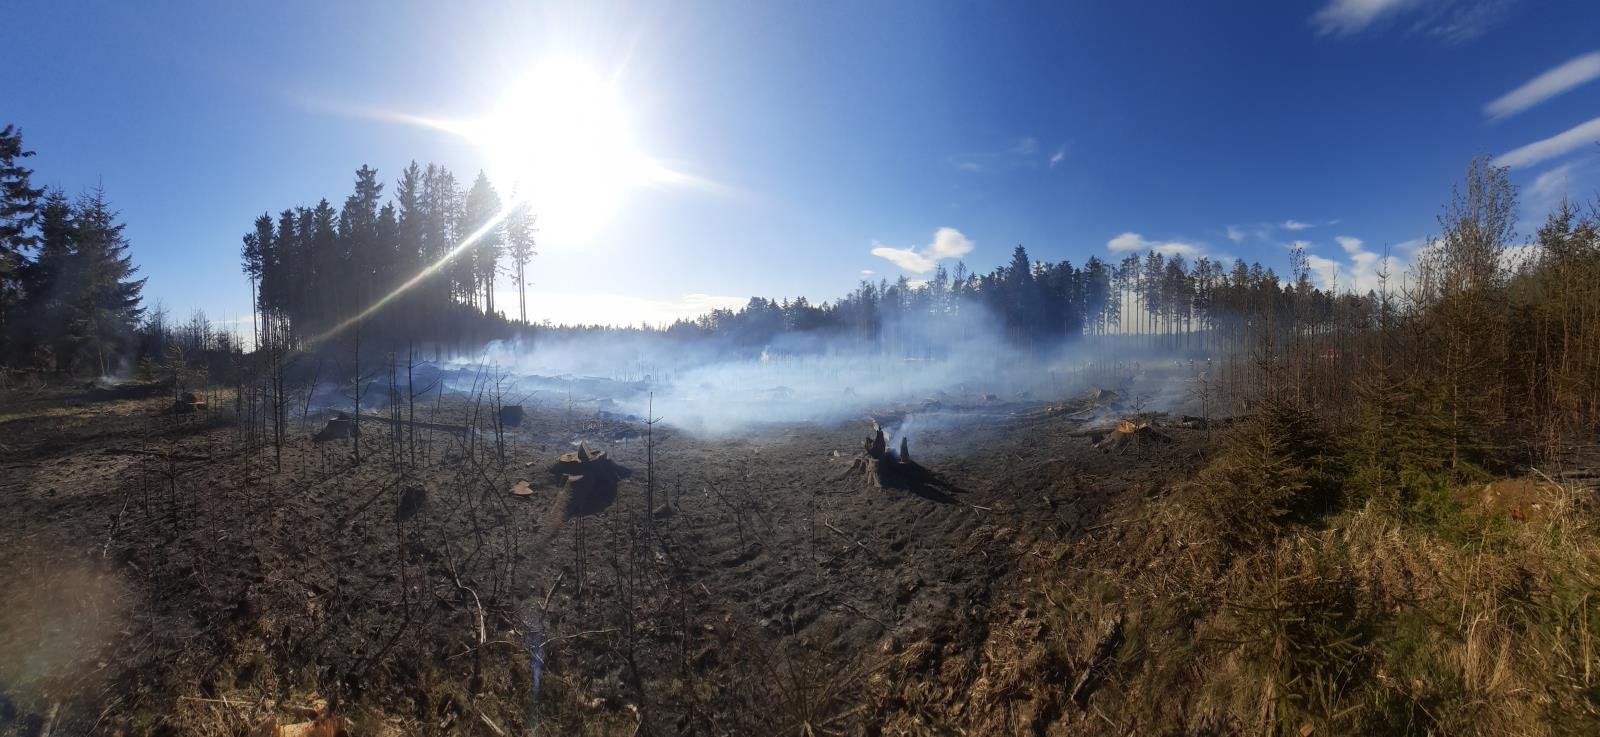 2021-11-05-Požár lesního porostu Černovice BK/2021-11-05-Požár lesního porostu Černovice BK (9).jpg